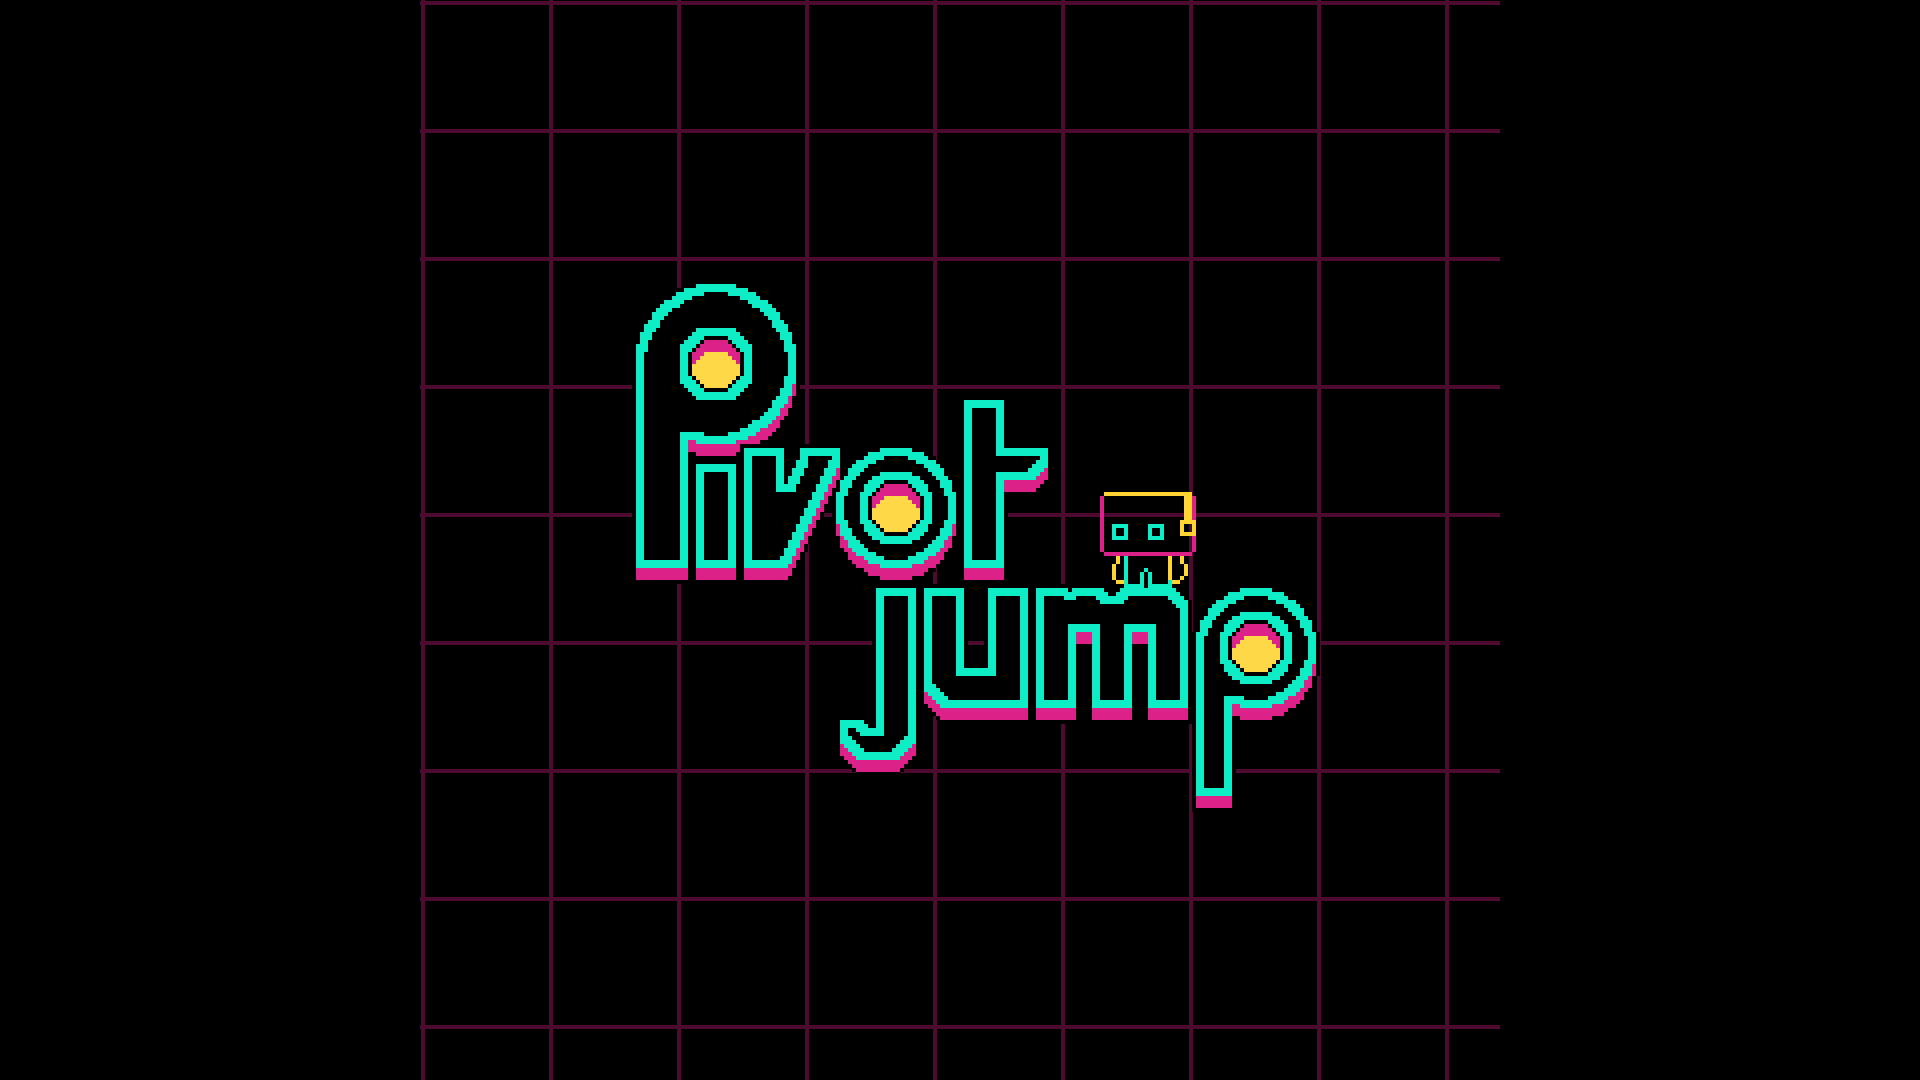 pivot jump